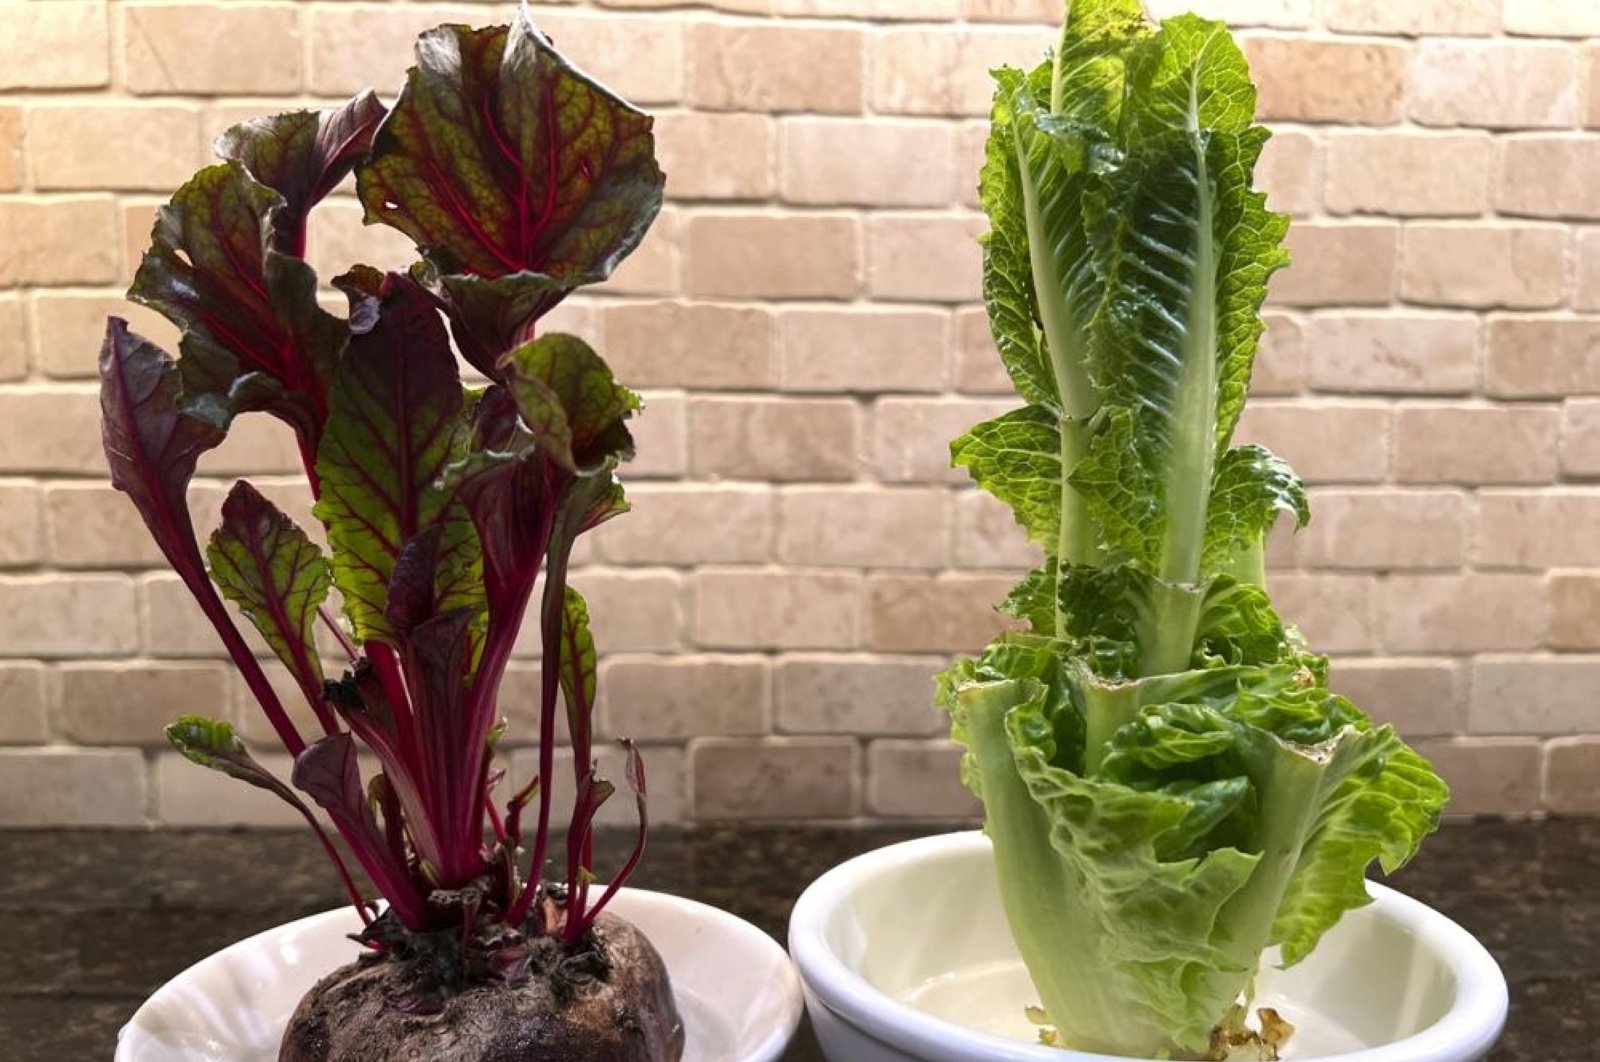 Tanpa limbah: Tanam kembali sayuran Anda sendiri dari sisa dapur